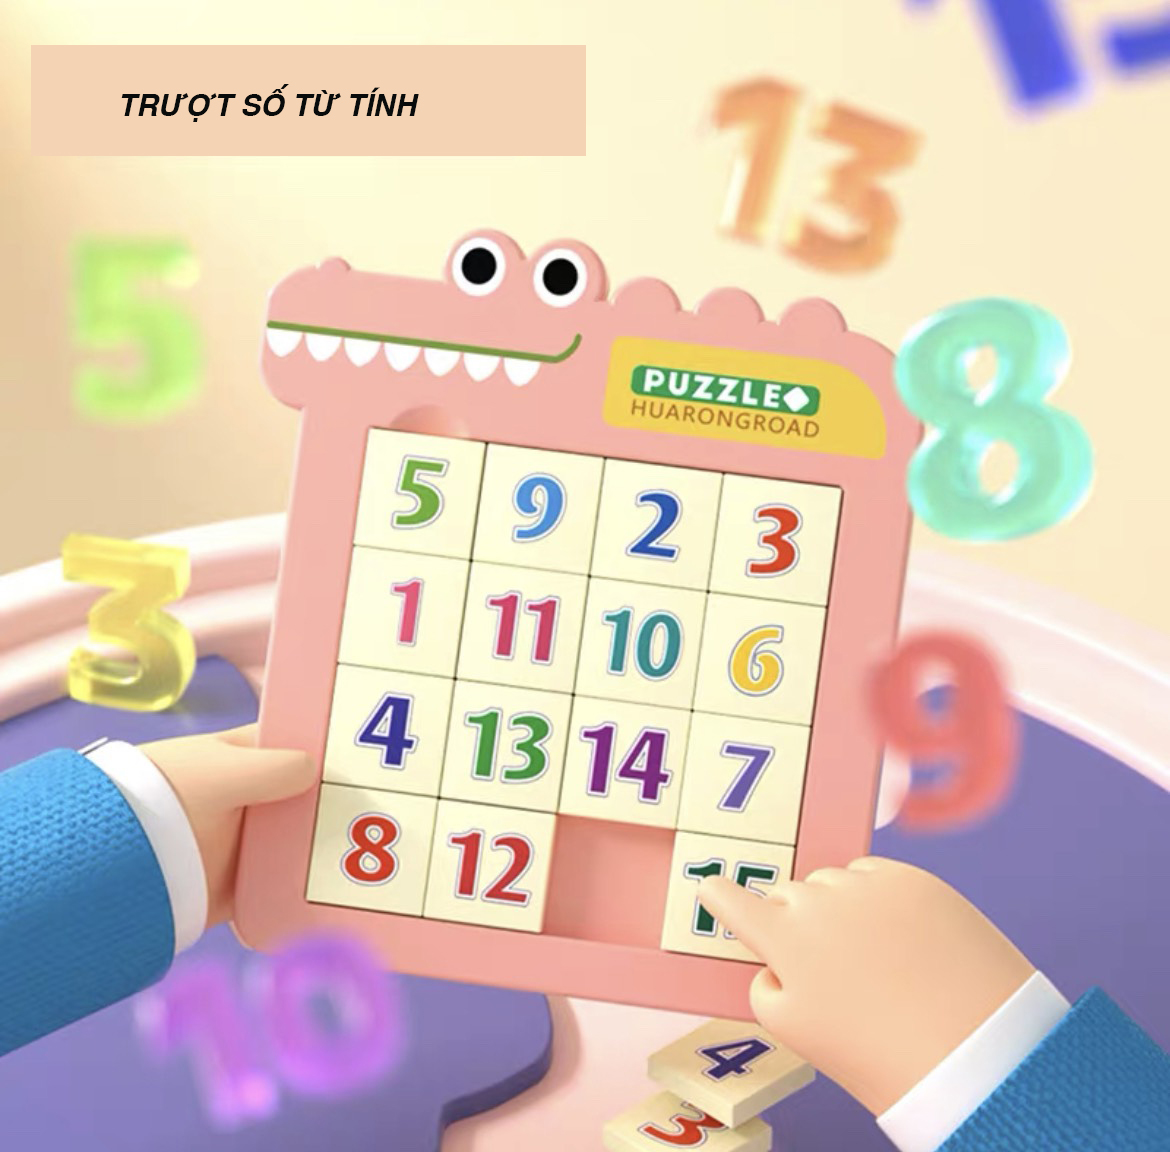 Đồ chơi bảng ghép hình trượt số Puzzle từ tính trí tuệ Sudoku phiên bản cá sấu giúp bé rèn luyện tư duy sáng tạo